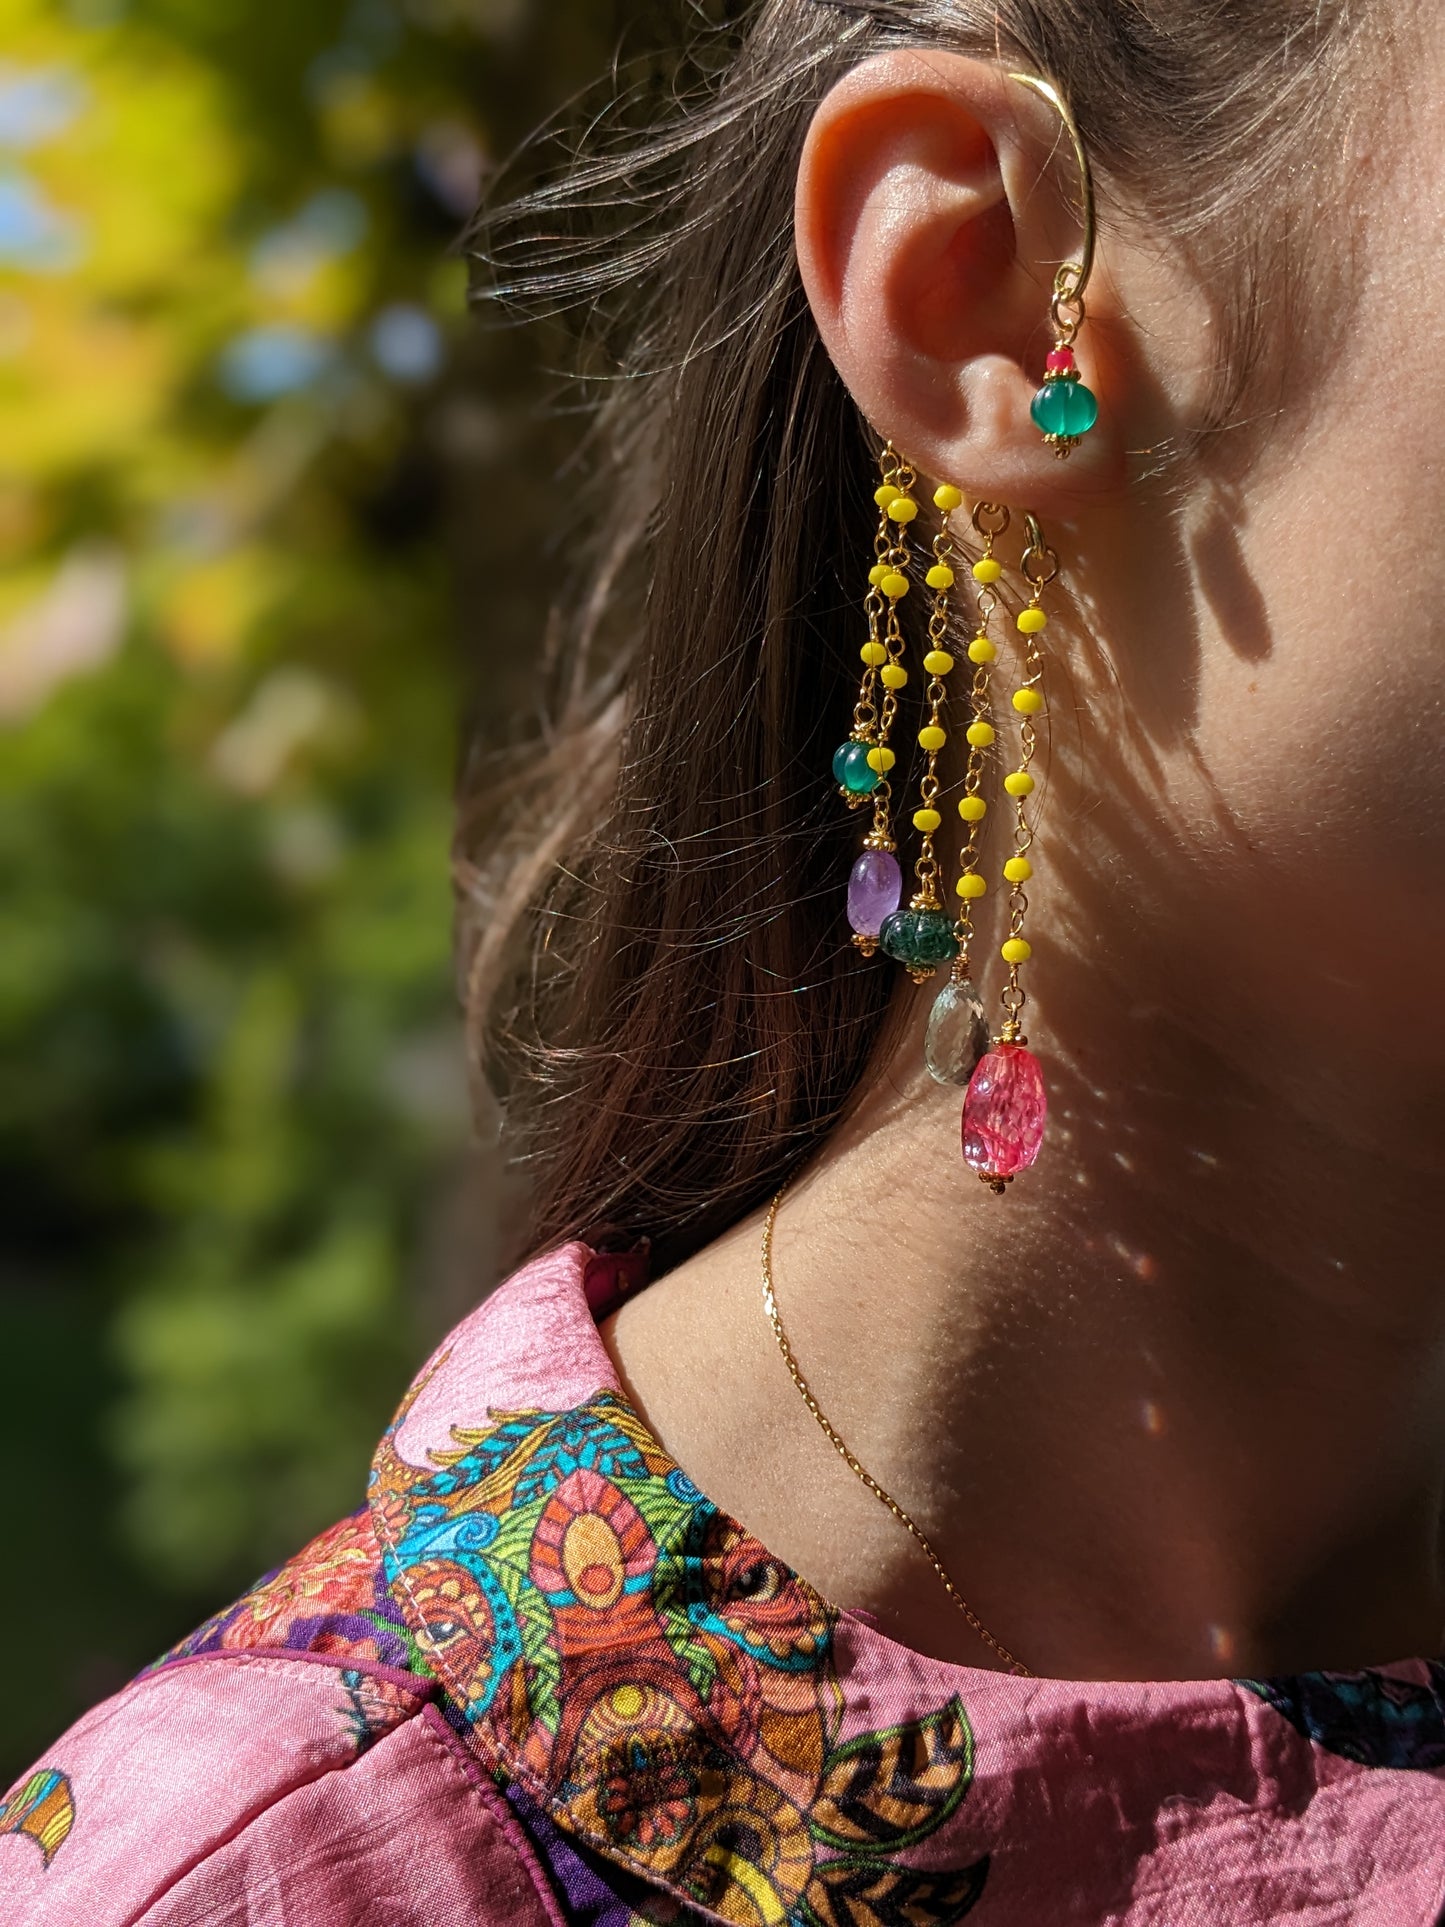 Boucles d'oreilles 'Goa' méticuleusement conçues, mettant en vedette une gravure sur onyx vert, des pierres d'agate teintées en rose, des gemmes d'améthyste et d'améthyste verte, complétées par des chaînes ornées de cristaux étincelants. Un hommage vibrant aux couleurs de l'Inde